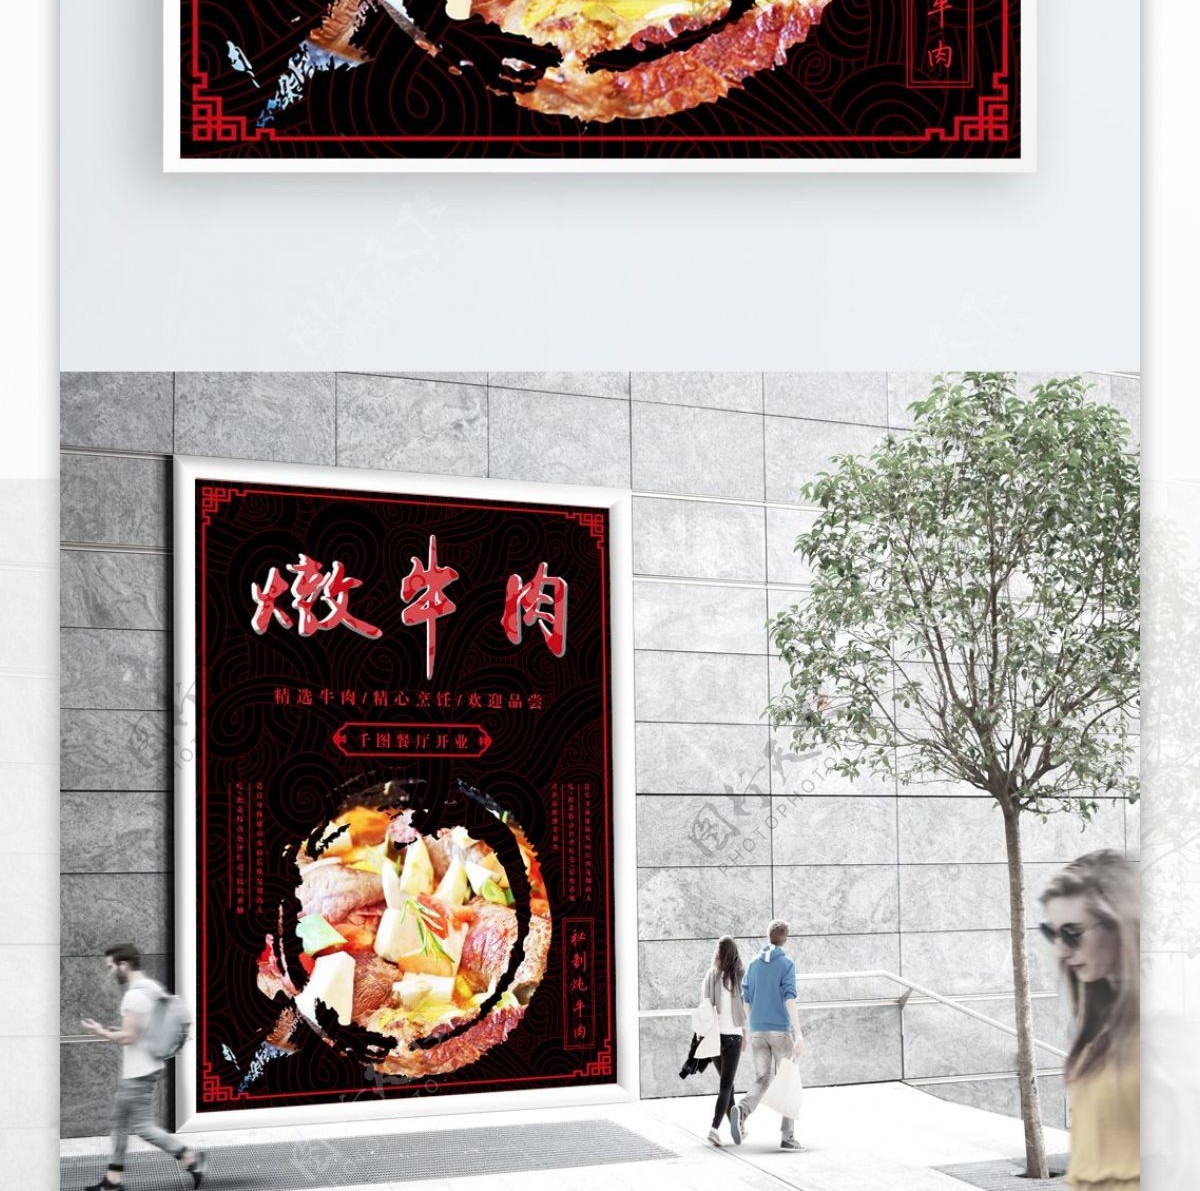 简约黑红色中国风古风炖牛肉美食海报